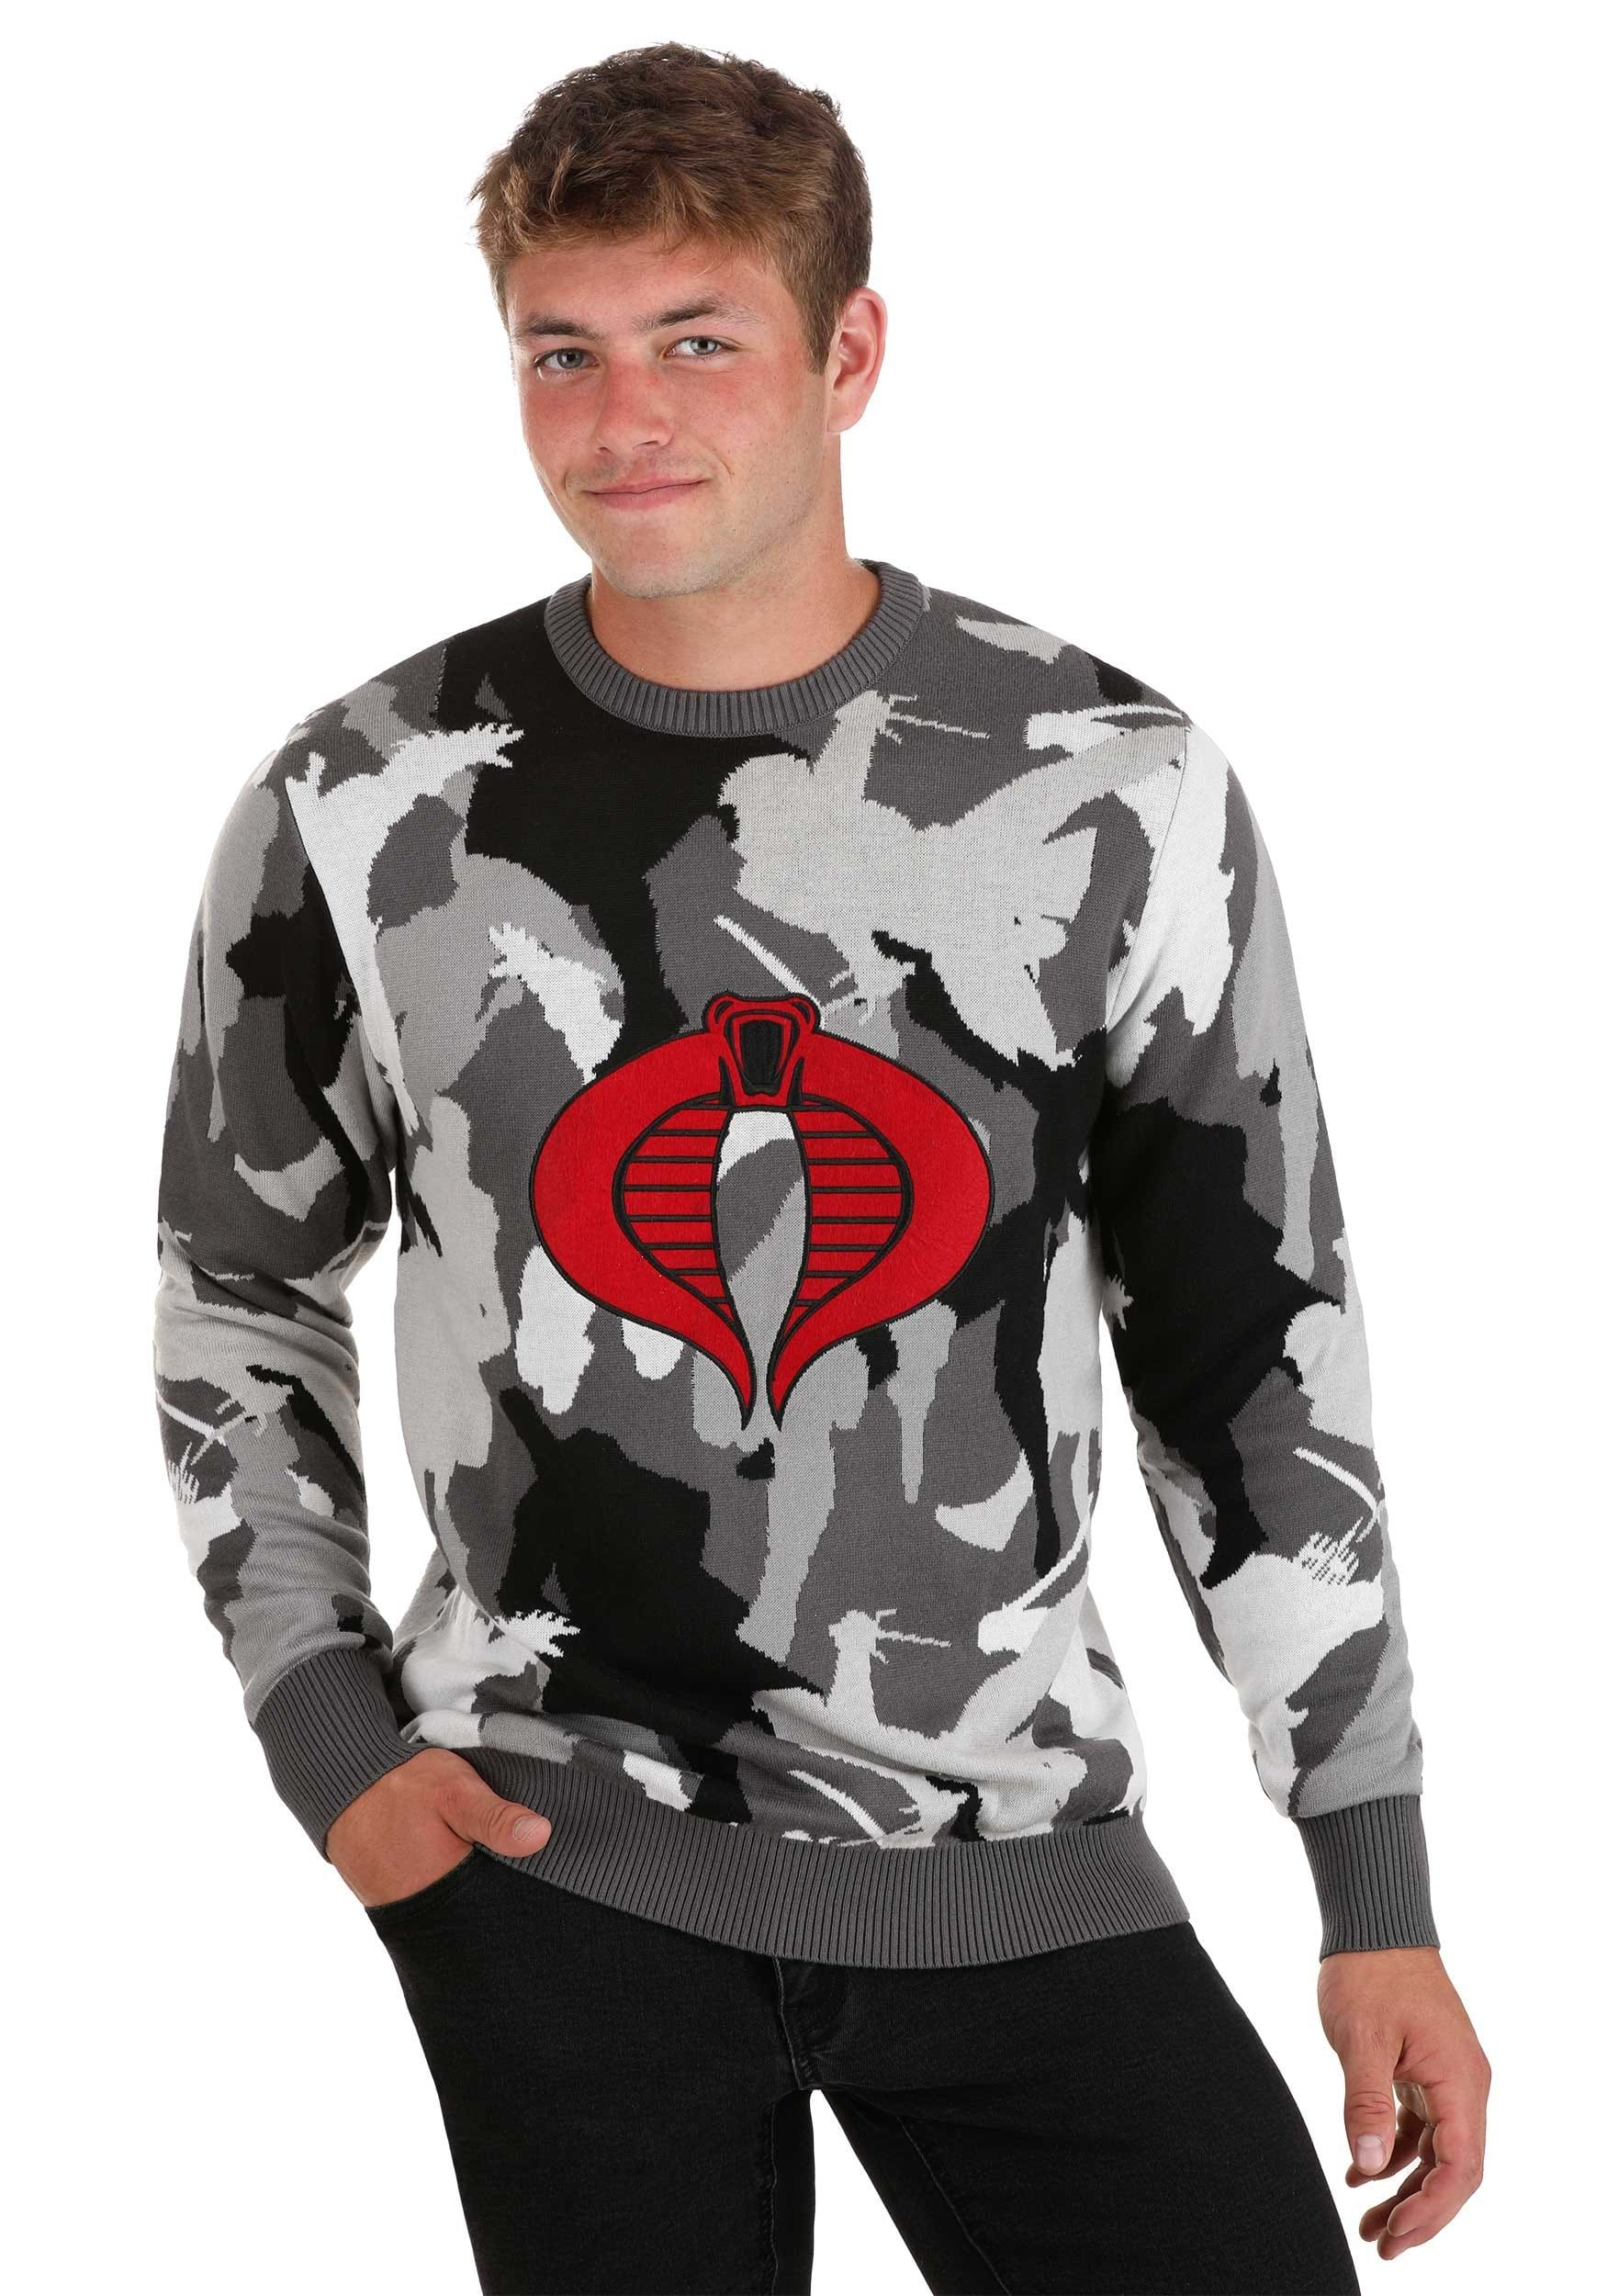 Cobra Camo GI Joe Adult Sweater